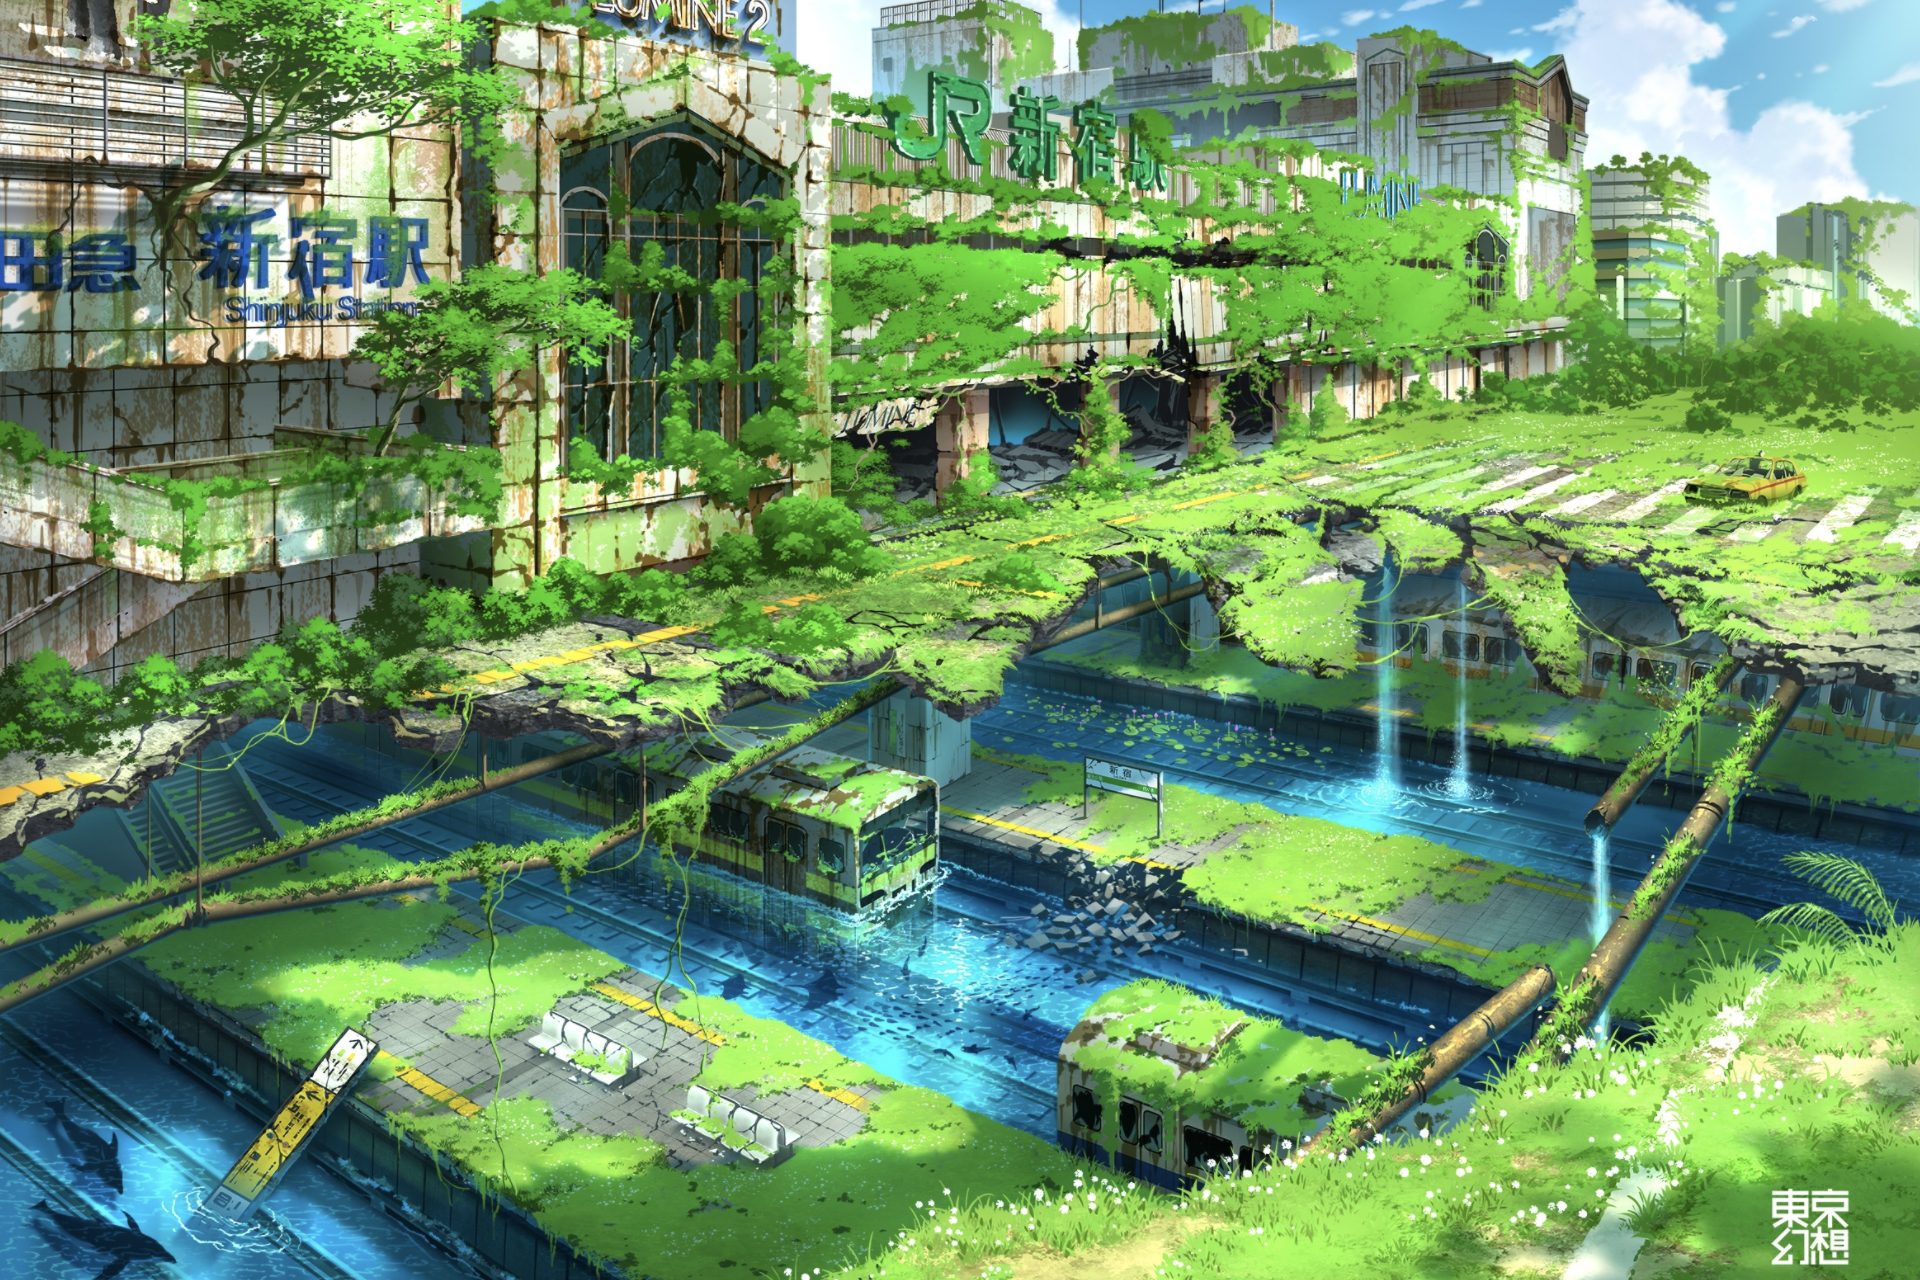 人が誰もいない 東京の未来図描いた 幻想イラスト が話題 Sirabee